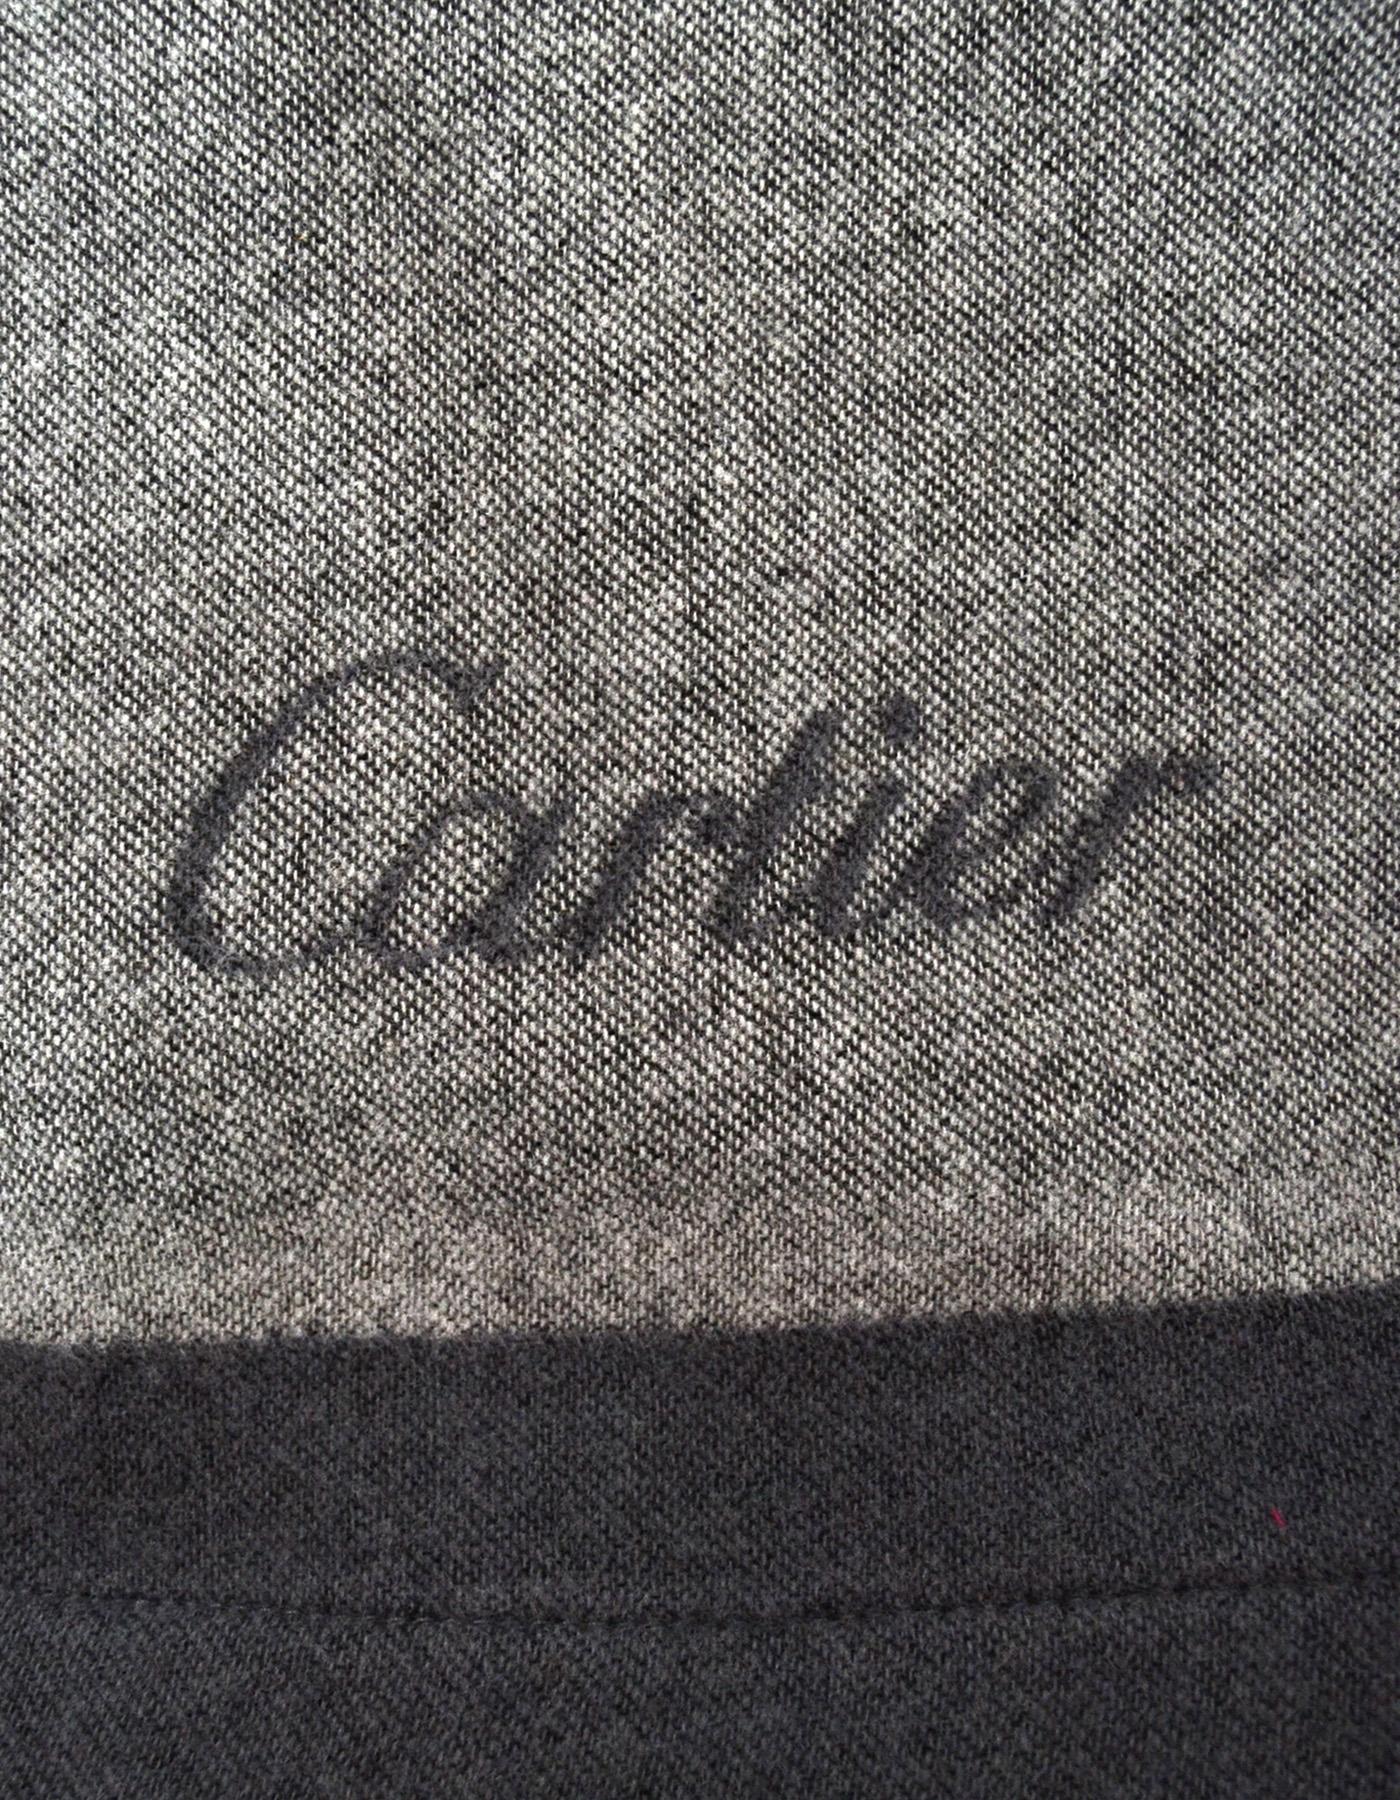 cartier throw blanket